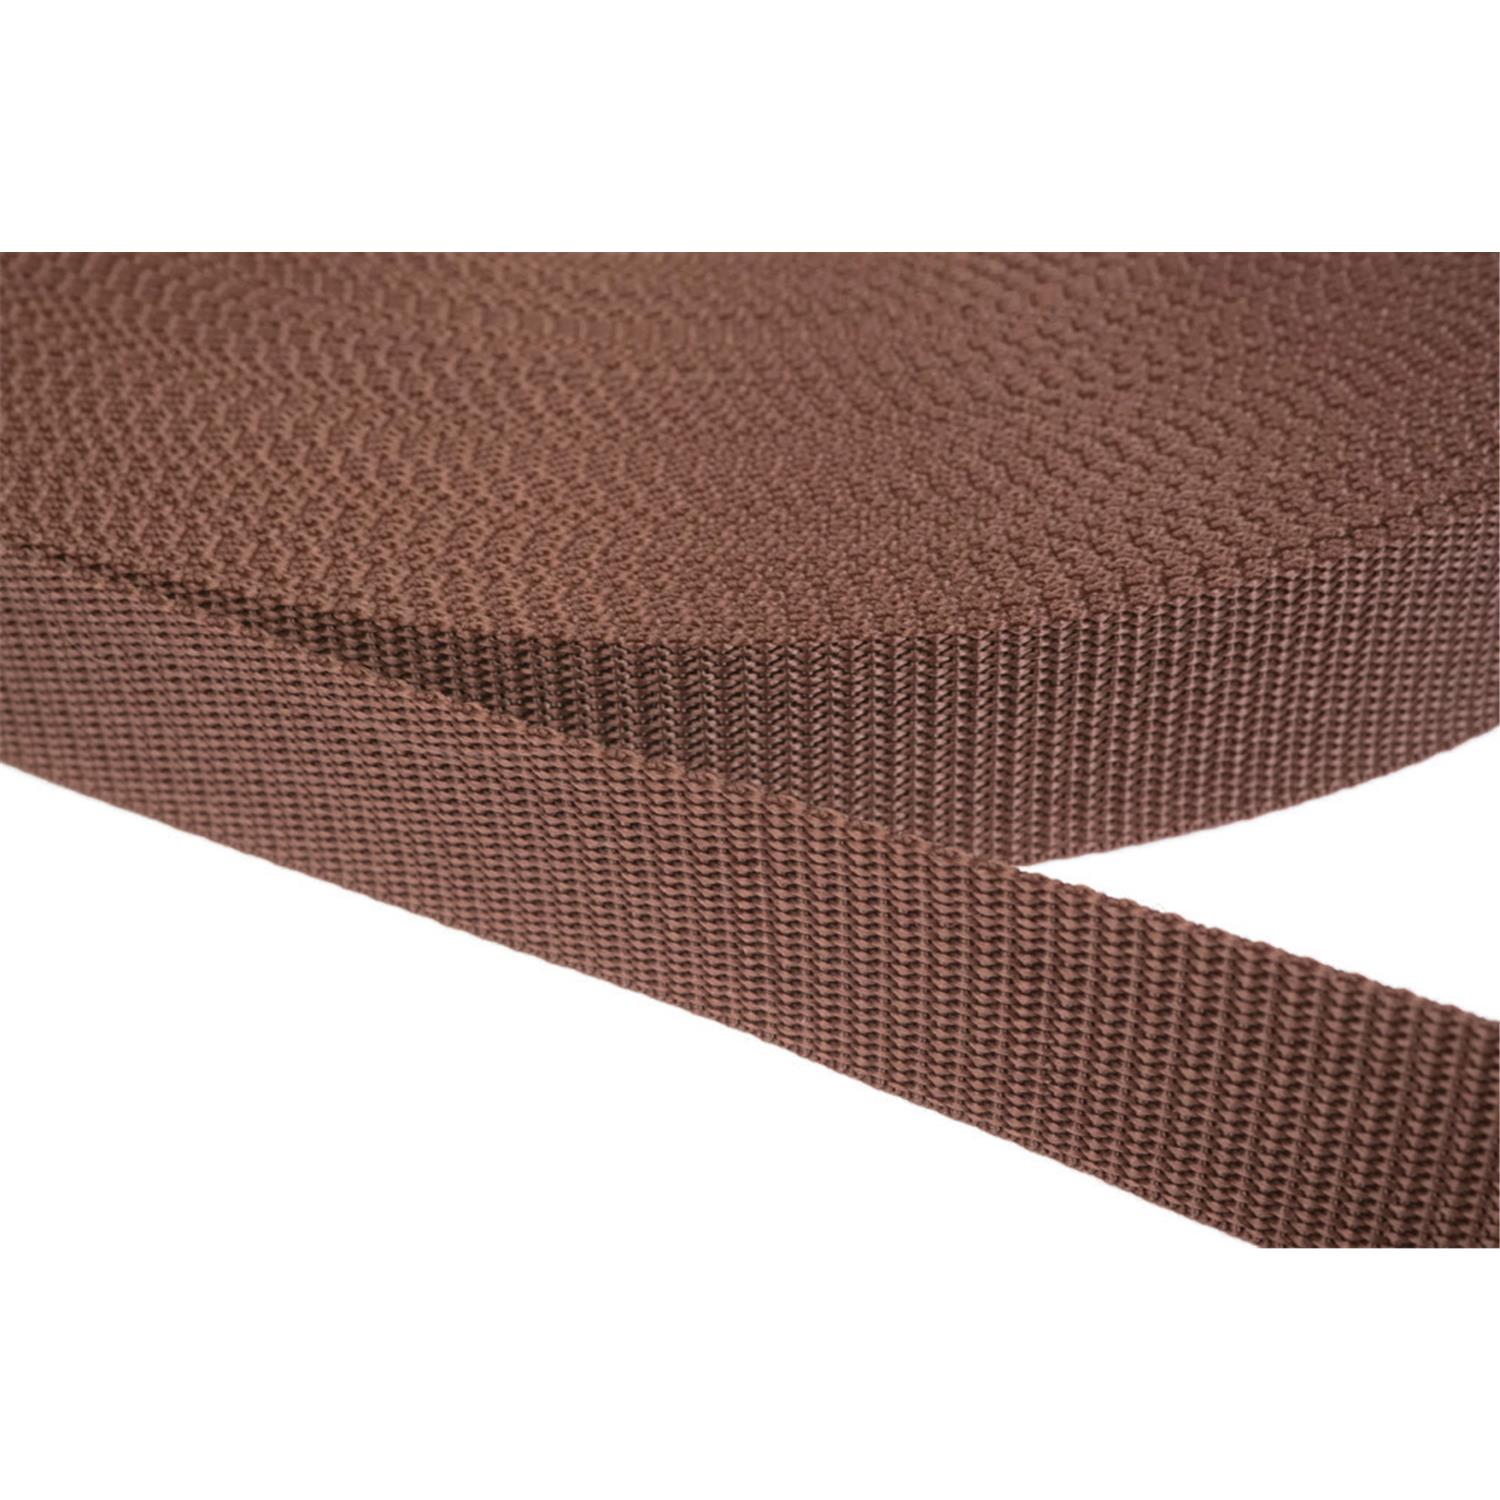 Gurtband 50mm breit aus Polypropylen in 41 Farben 07 - braun 12 Meter